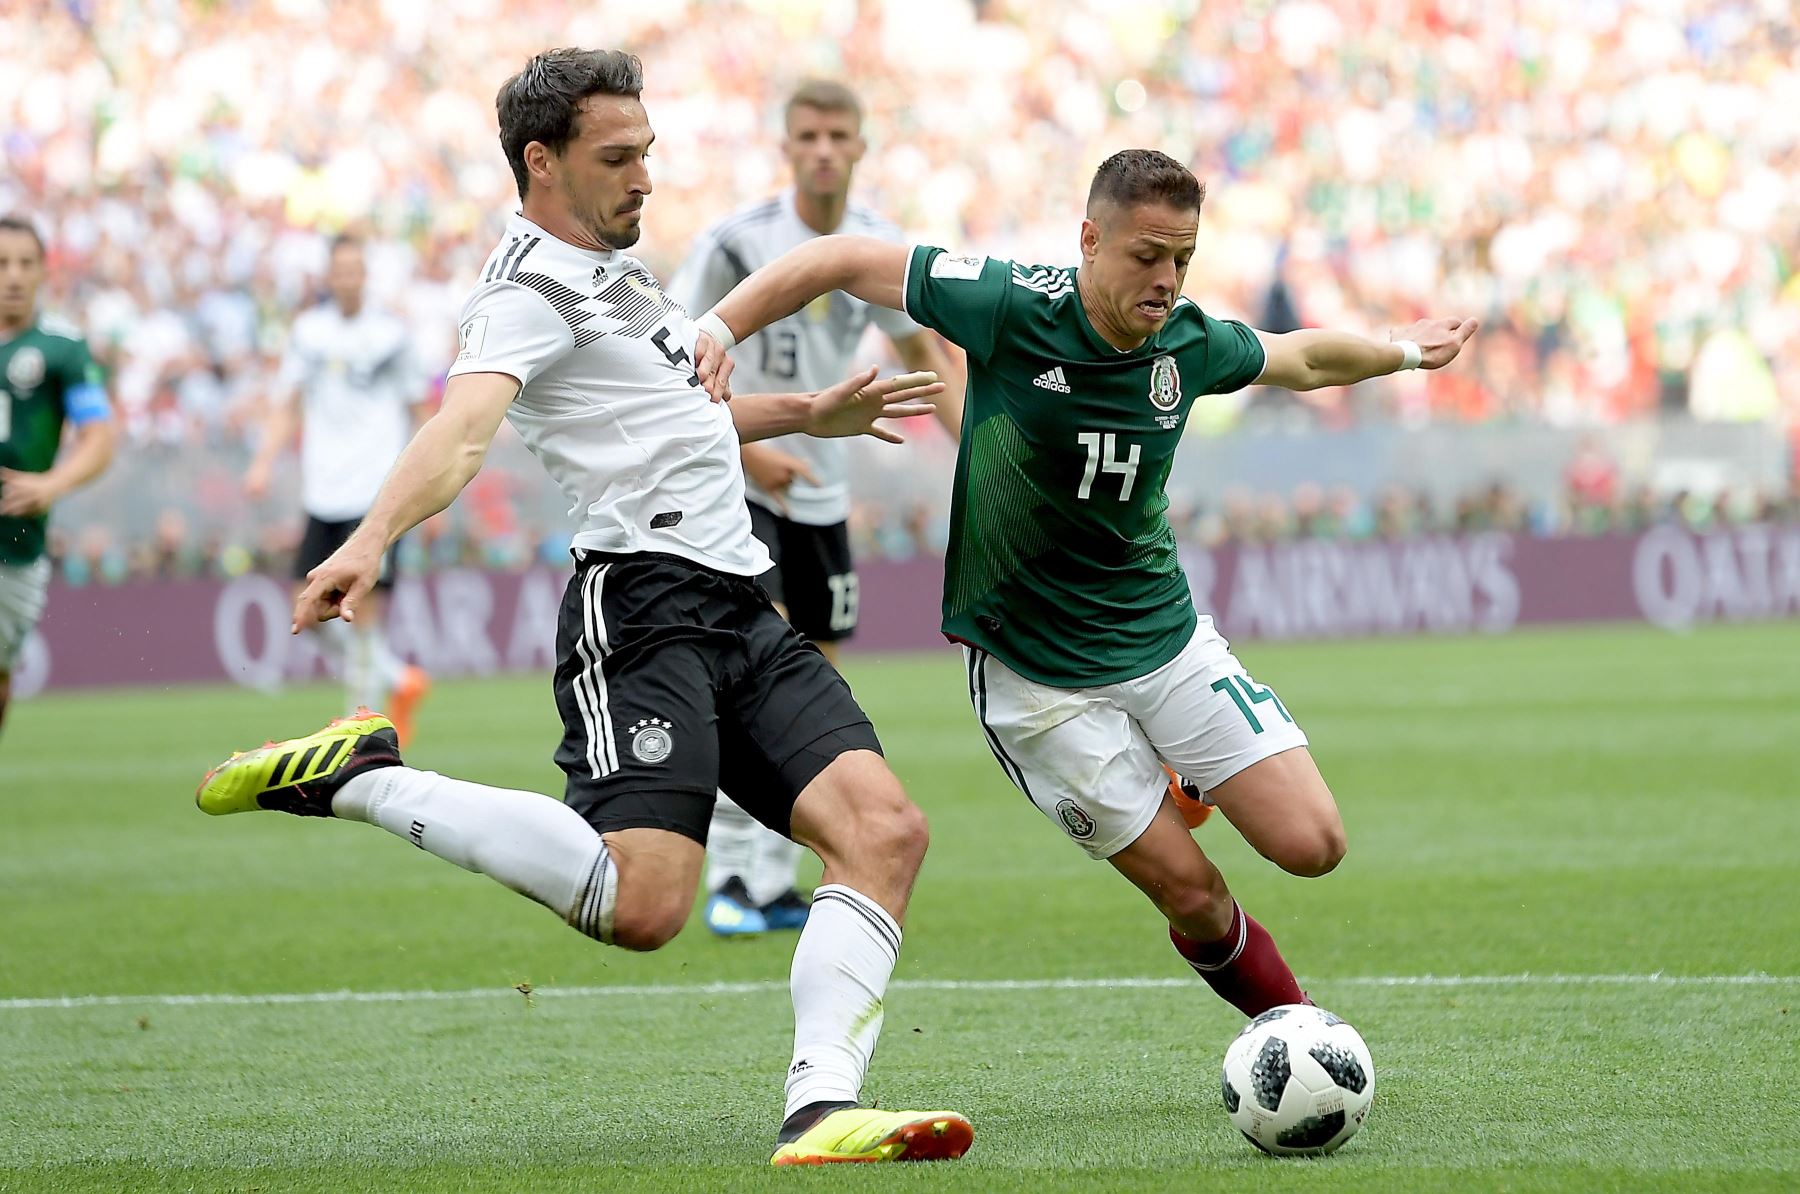 Mats Hummels de Alemania y Javier Hernández de México en acción durante el partido de fútbol preliminar del grupo F de la Copa Mundial de la FIFA 2018 entre Alemania y México en Moscú.Foto:EFE